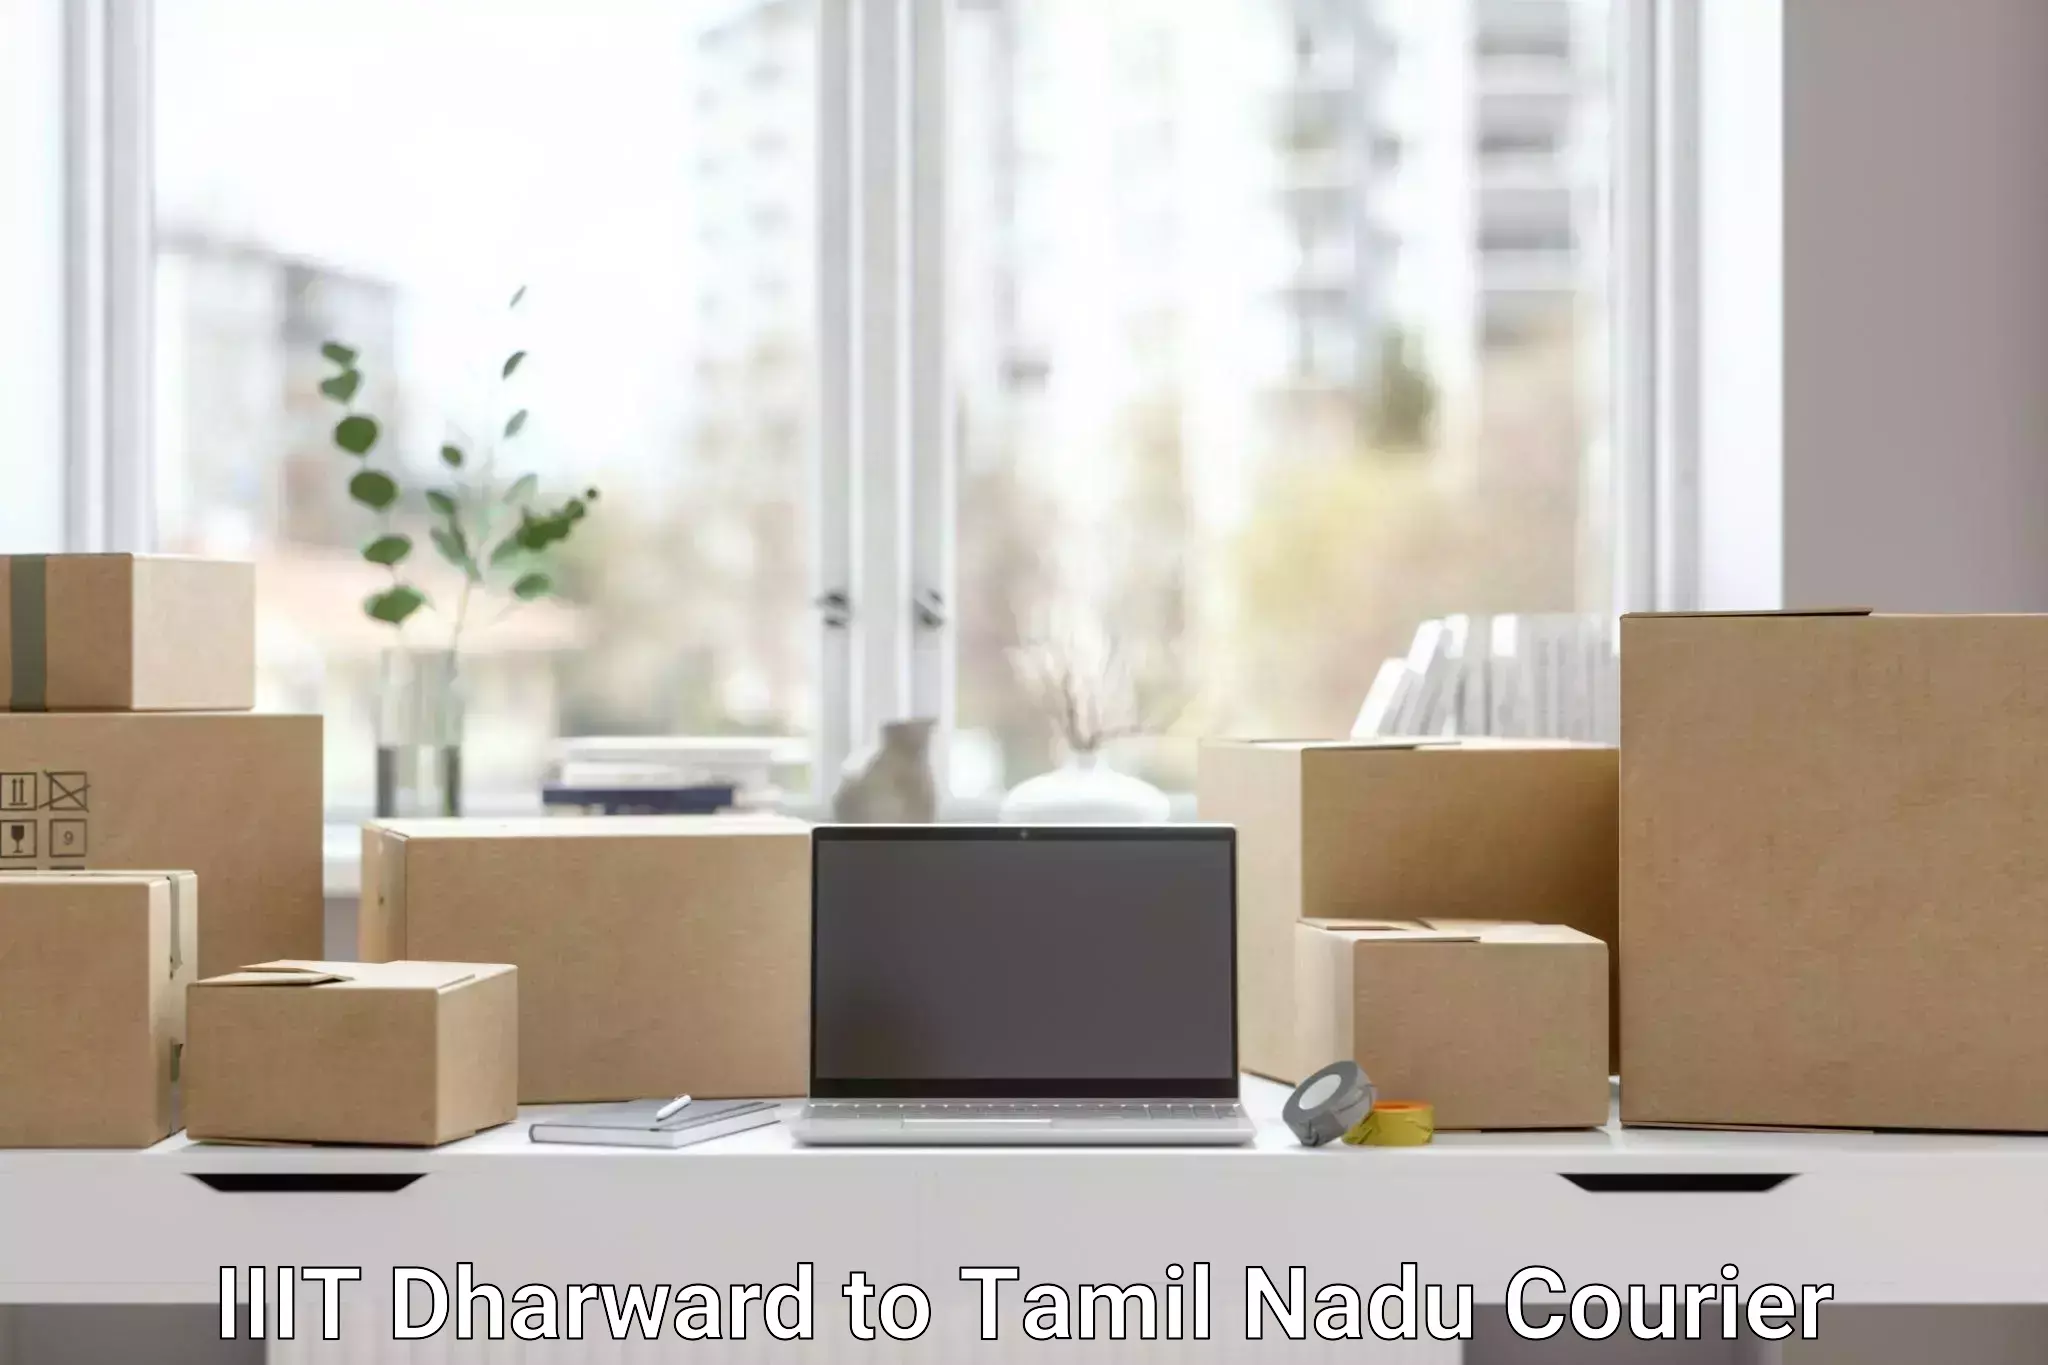 Enhanced tracking features IIIT Dharward to Tamil Nadu